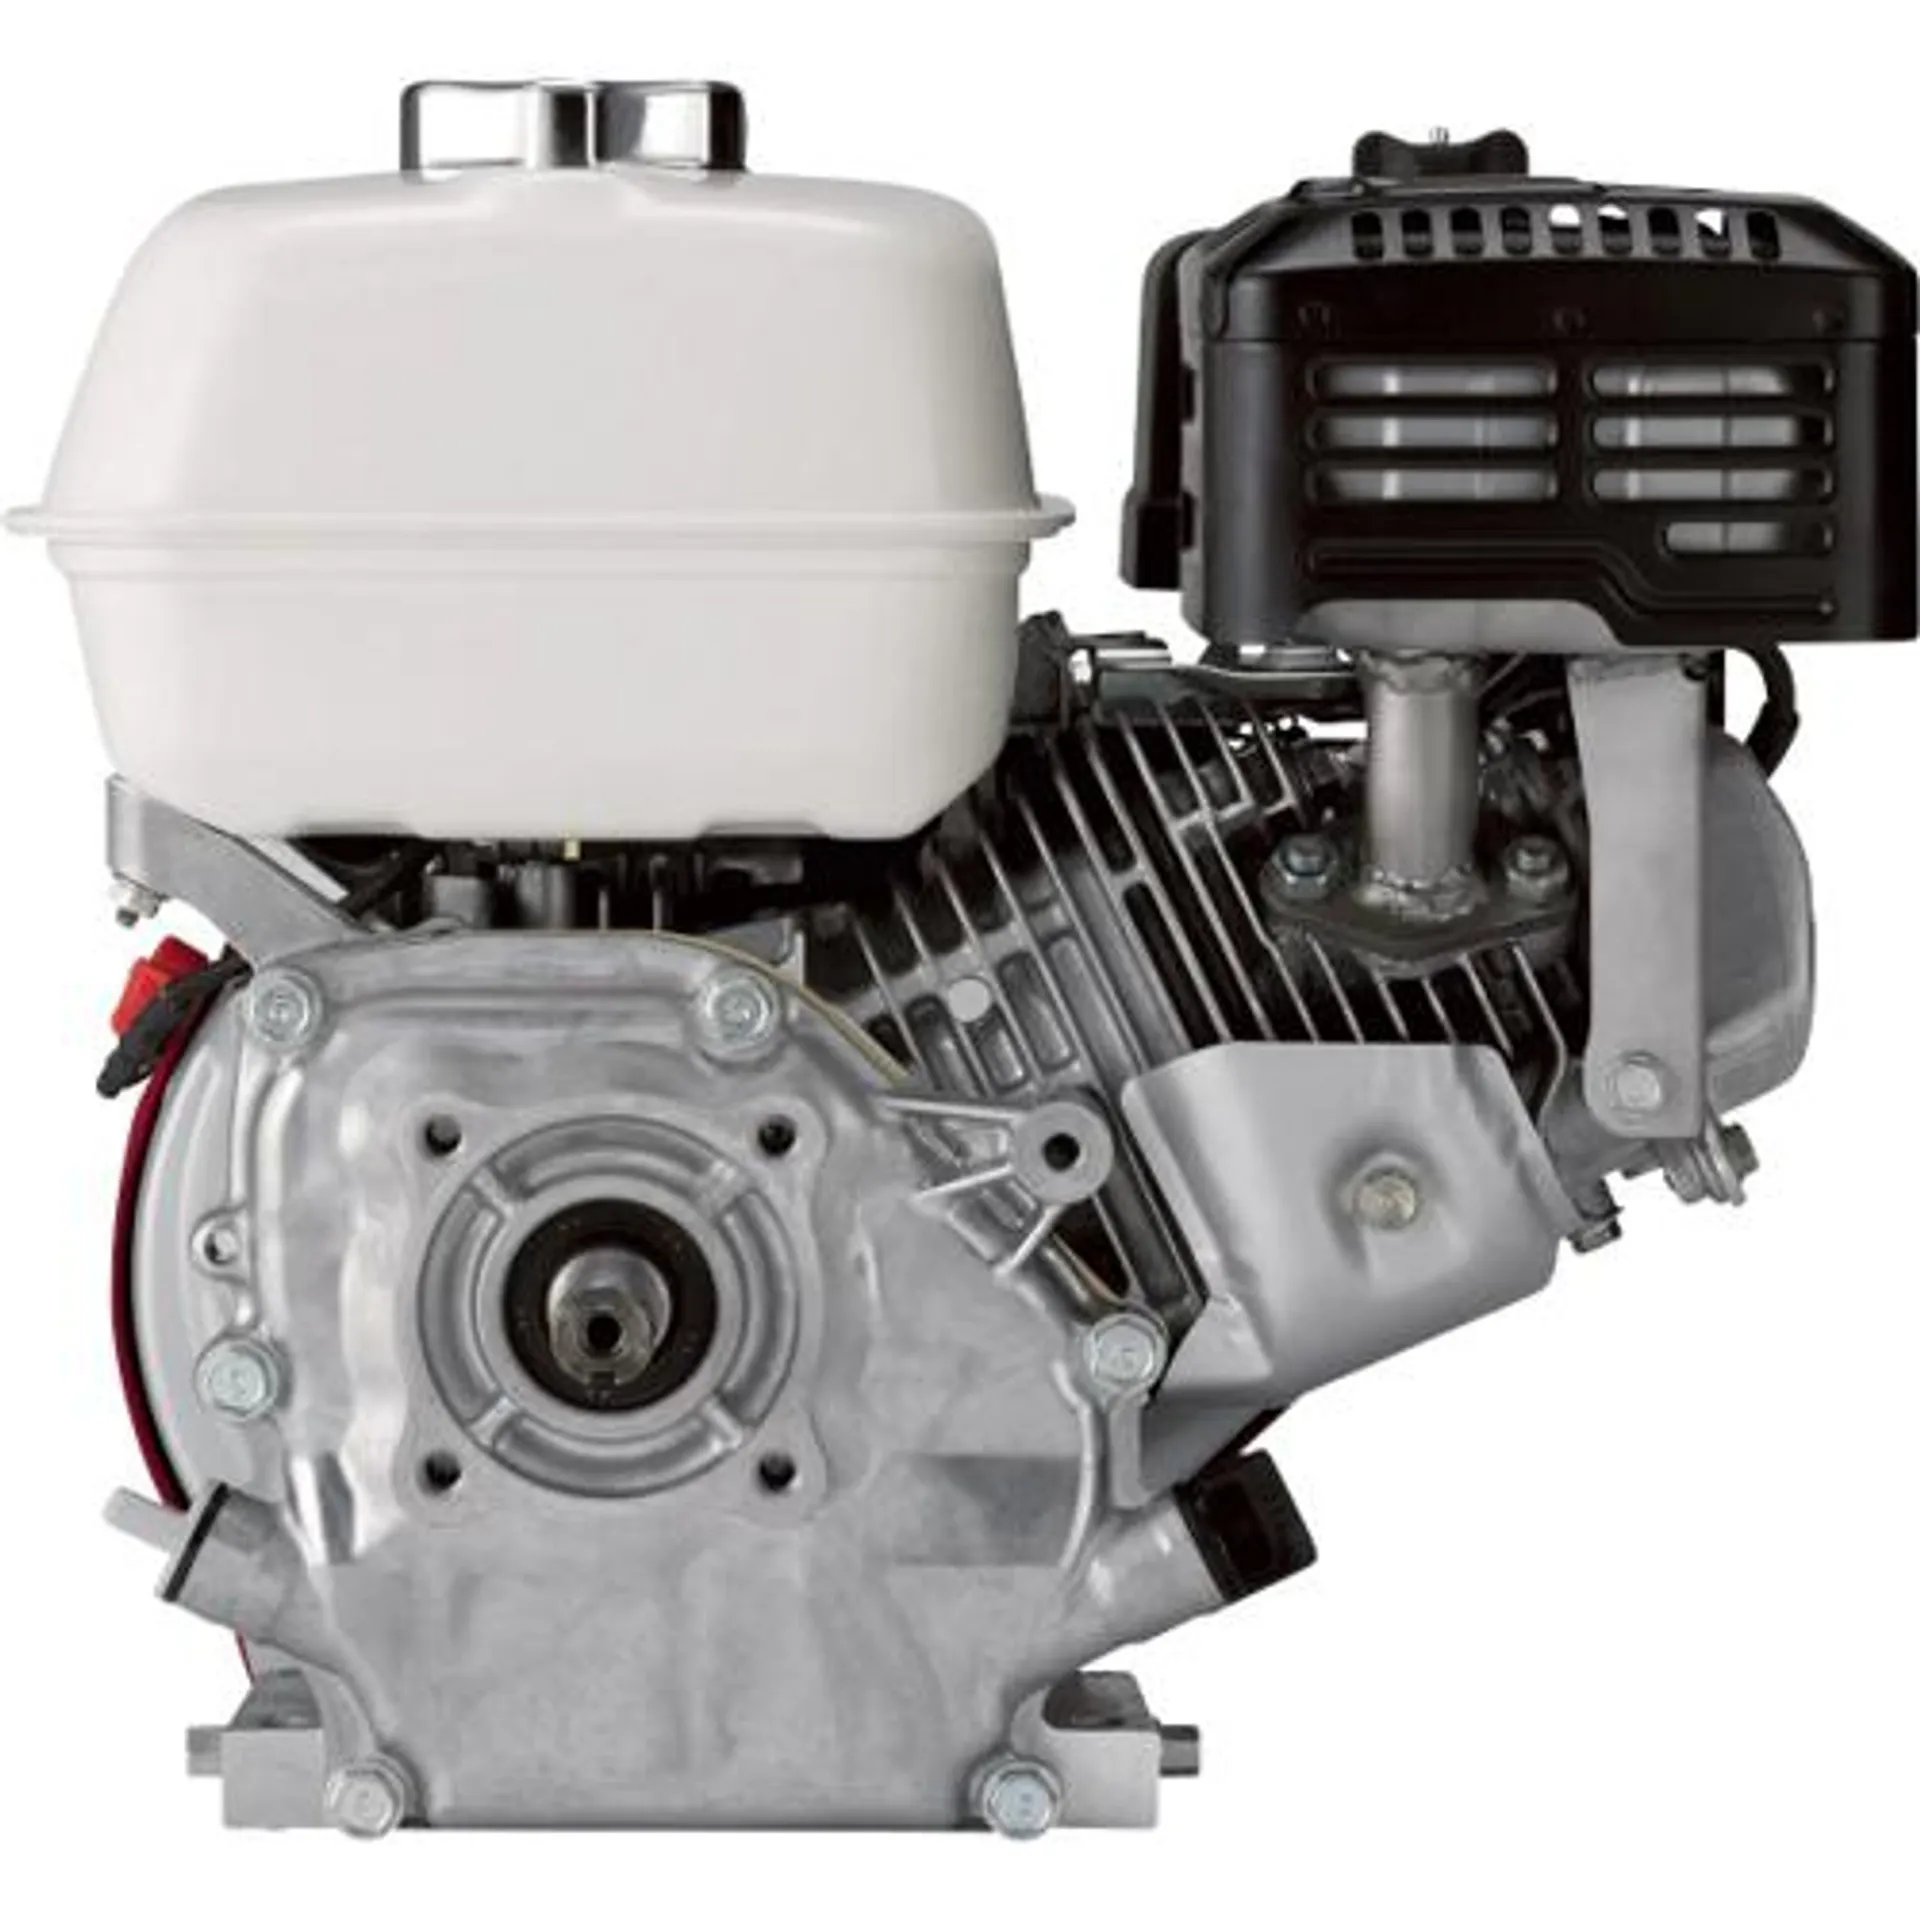 Honda GX Series 196cc Engine